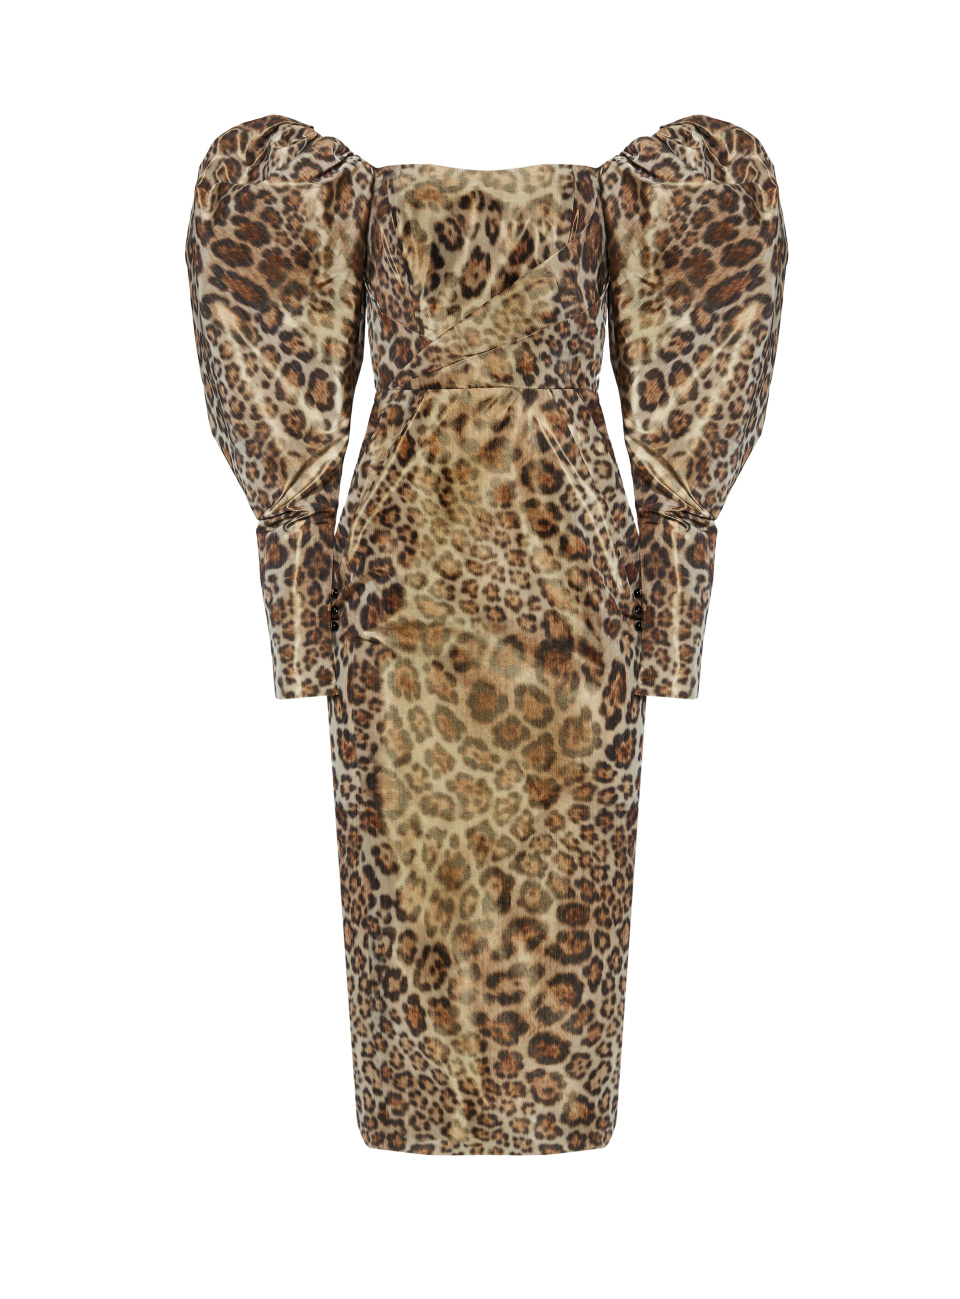 Леопардовое платье с открытыми плечами, 1